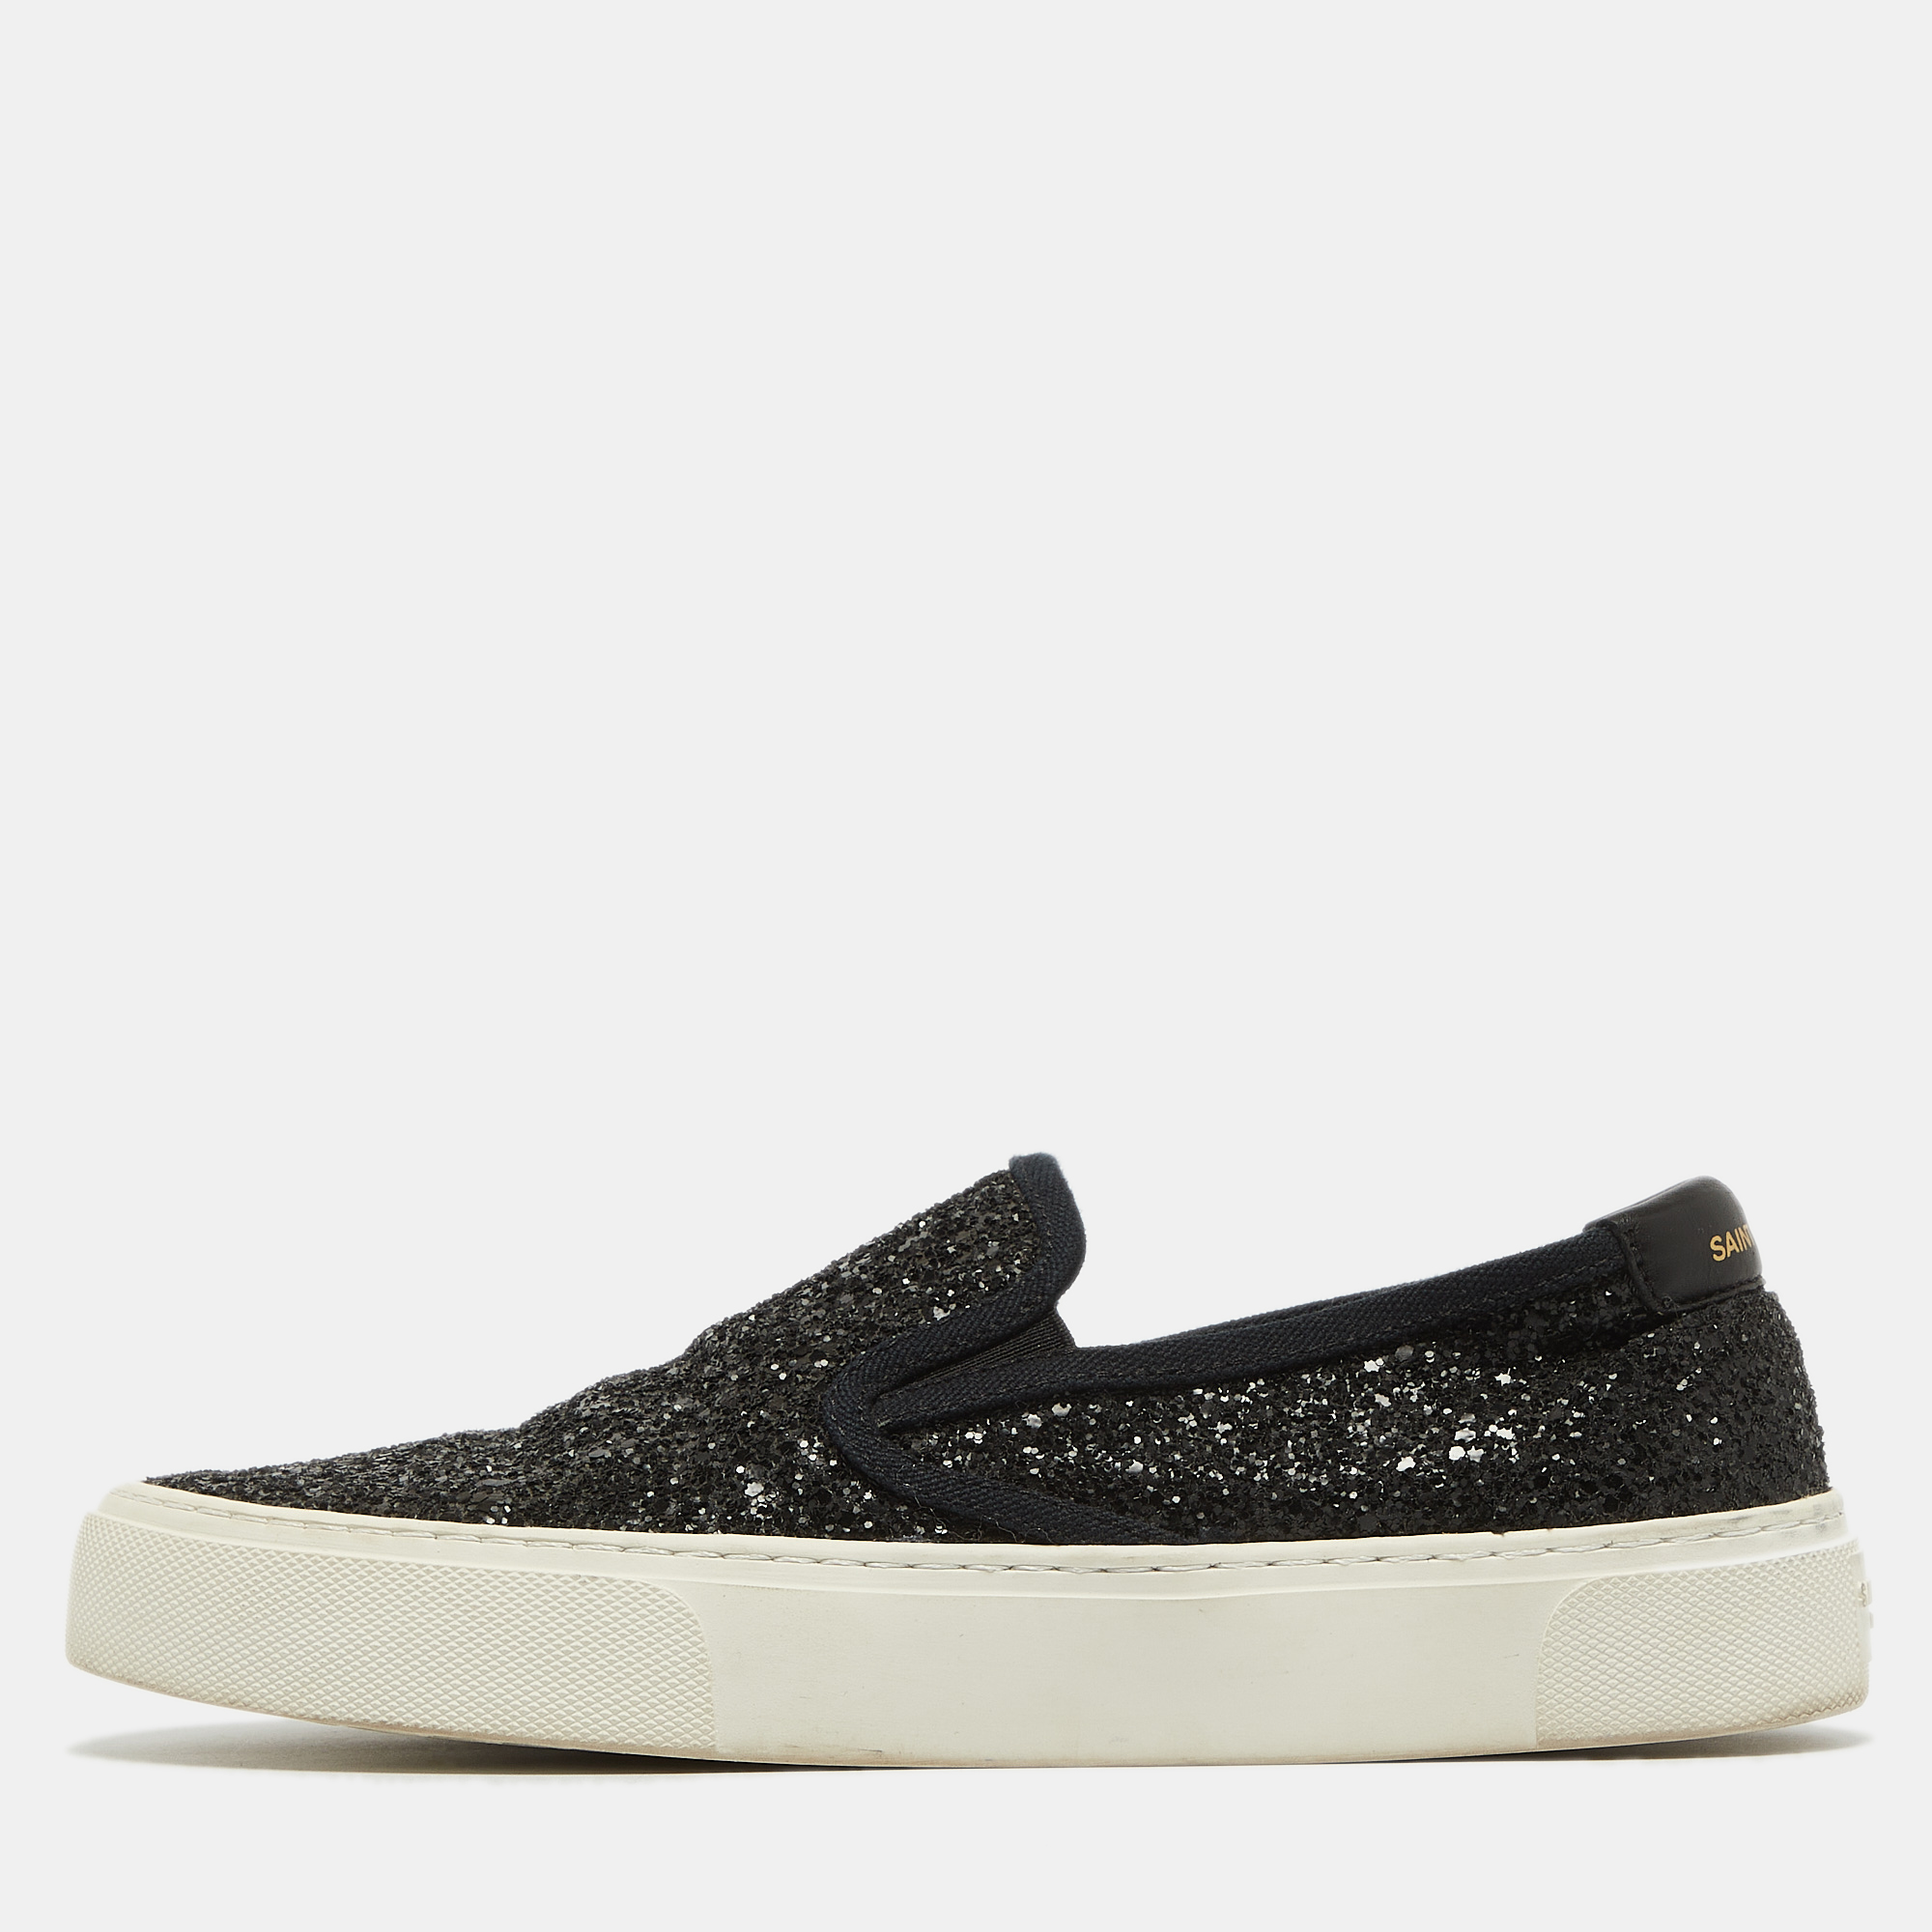 Pre-owned Saint Laurent Black Glitter Slip On Sneakers Size 37.5